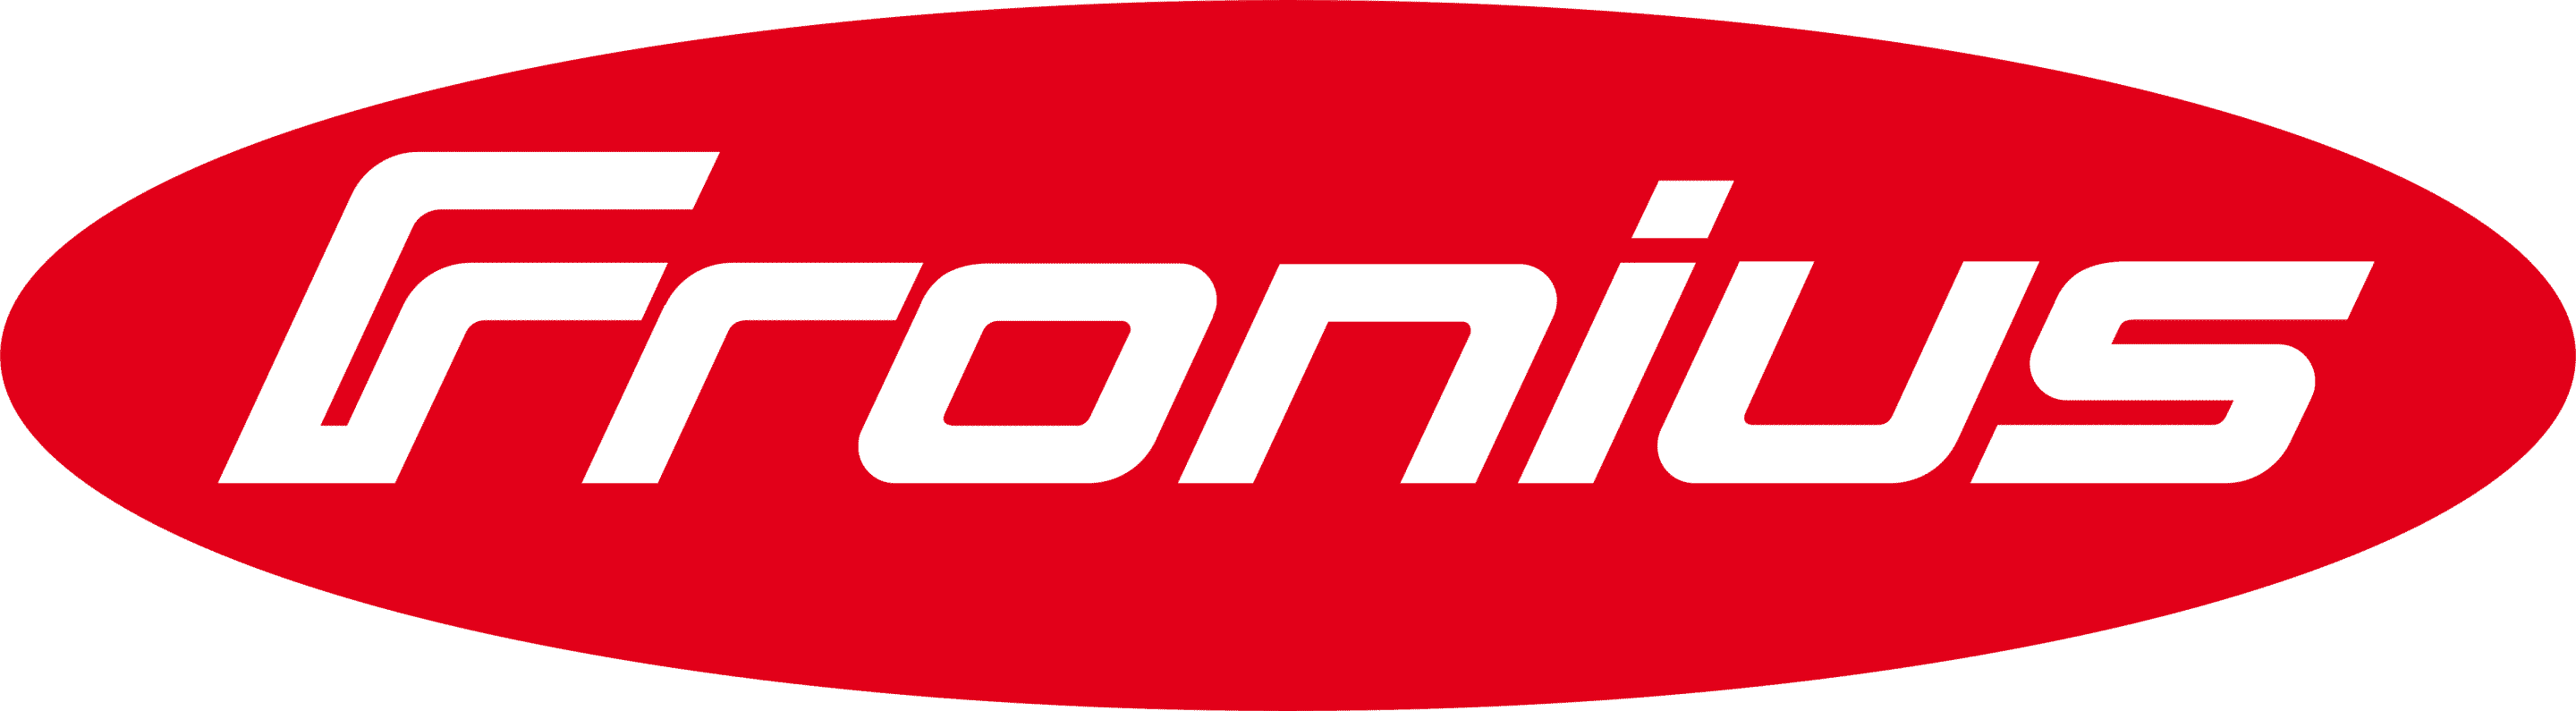 Fronius_logo